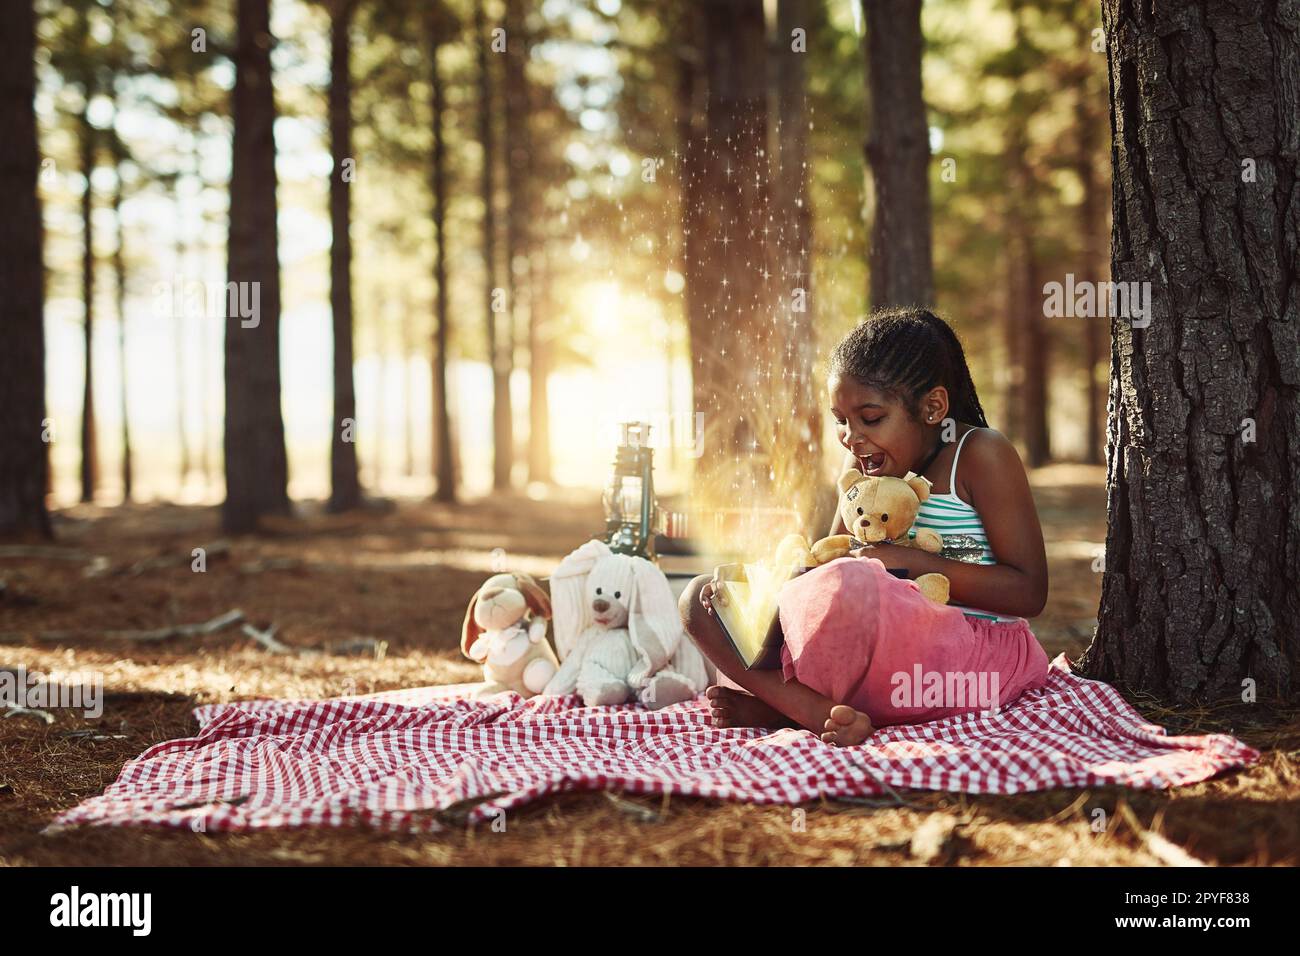 Die magischsten Orte finden Sie in Büchern. Ein kleines Mädchen liest ein Buch mit leuchtenden Seiten im Wald. Stockfoto